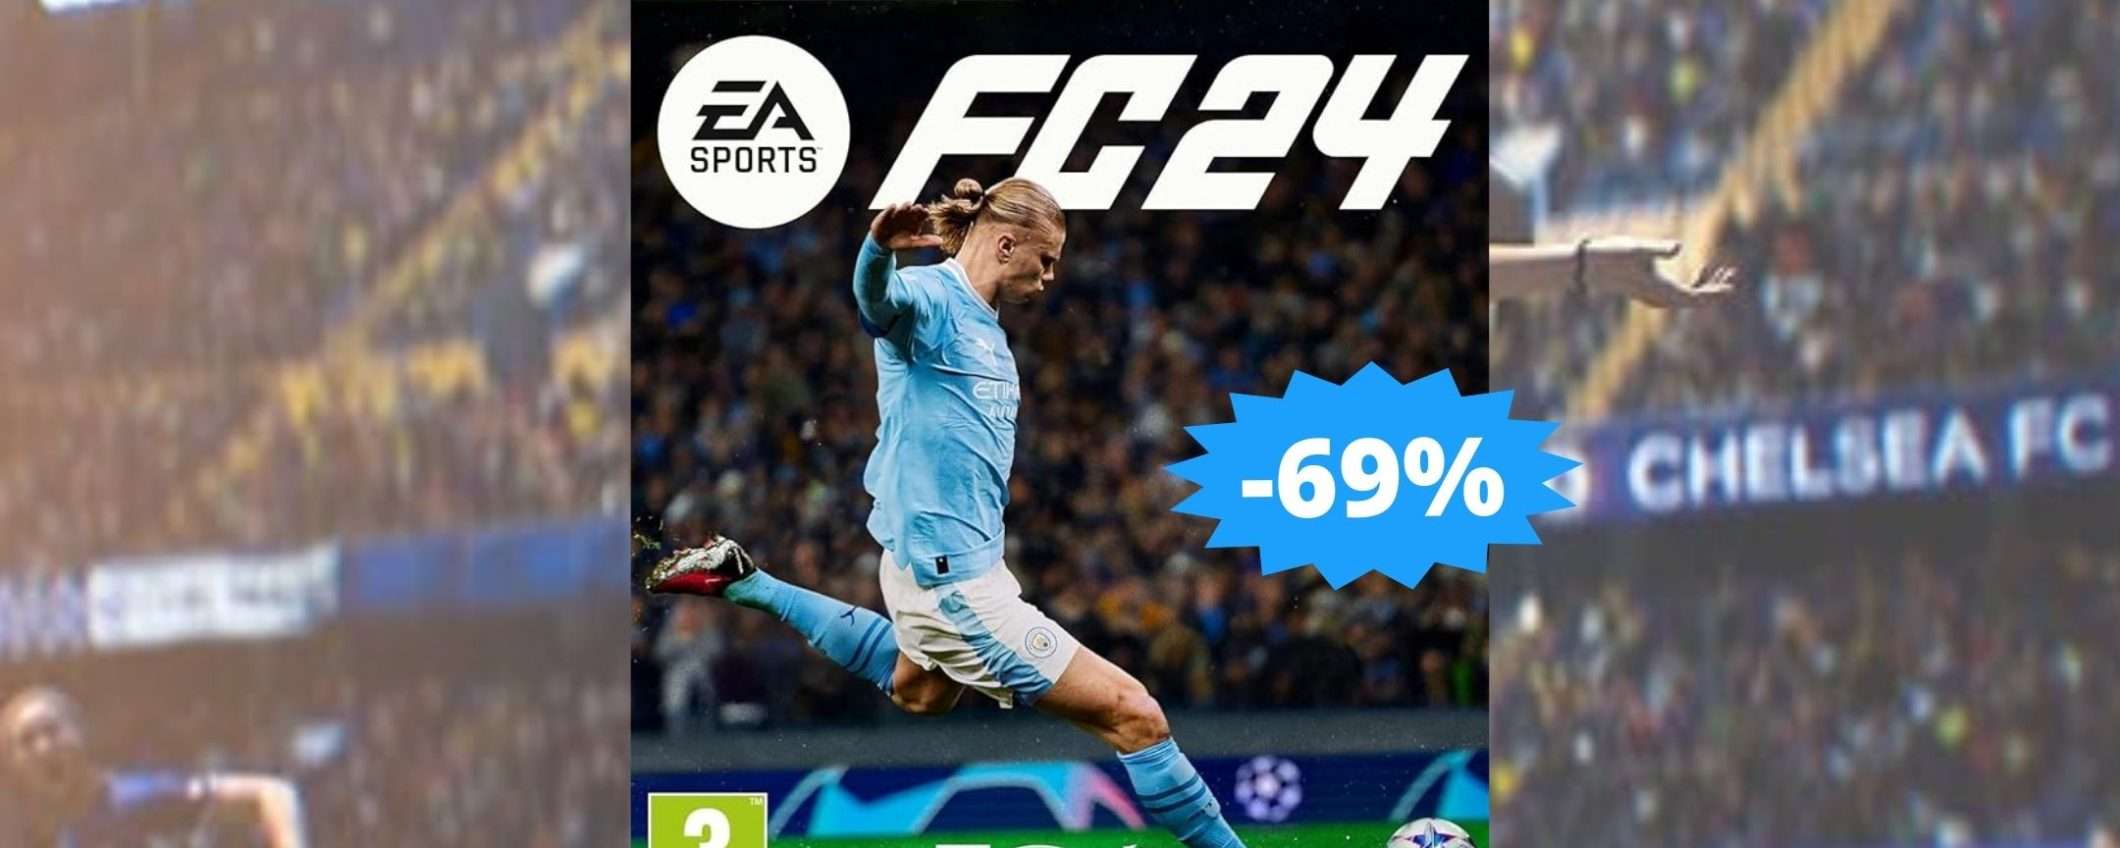 EA SPORTS FC 24 per Xbox: sconto FOLLE del 69% su Amazon